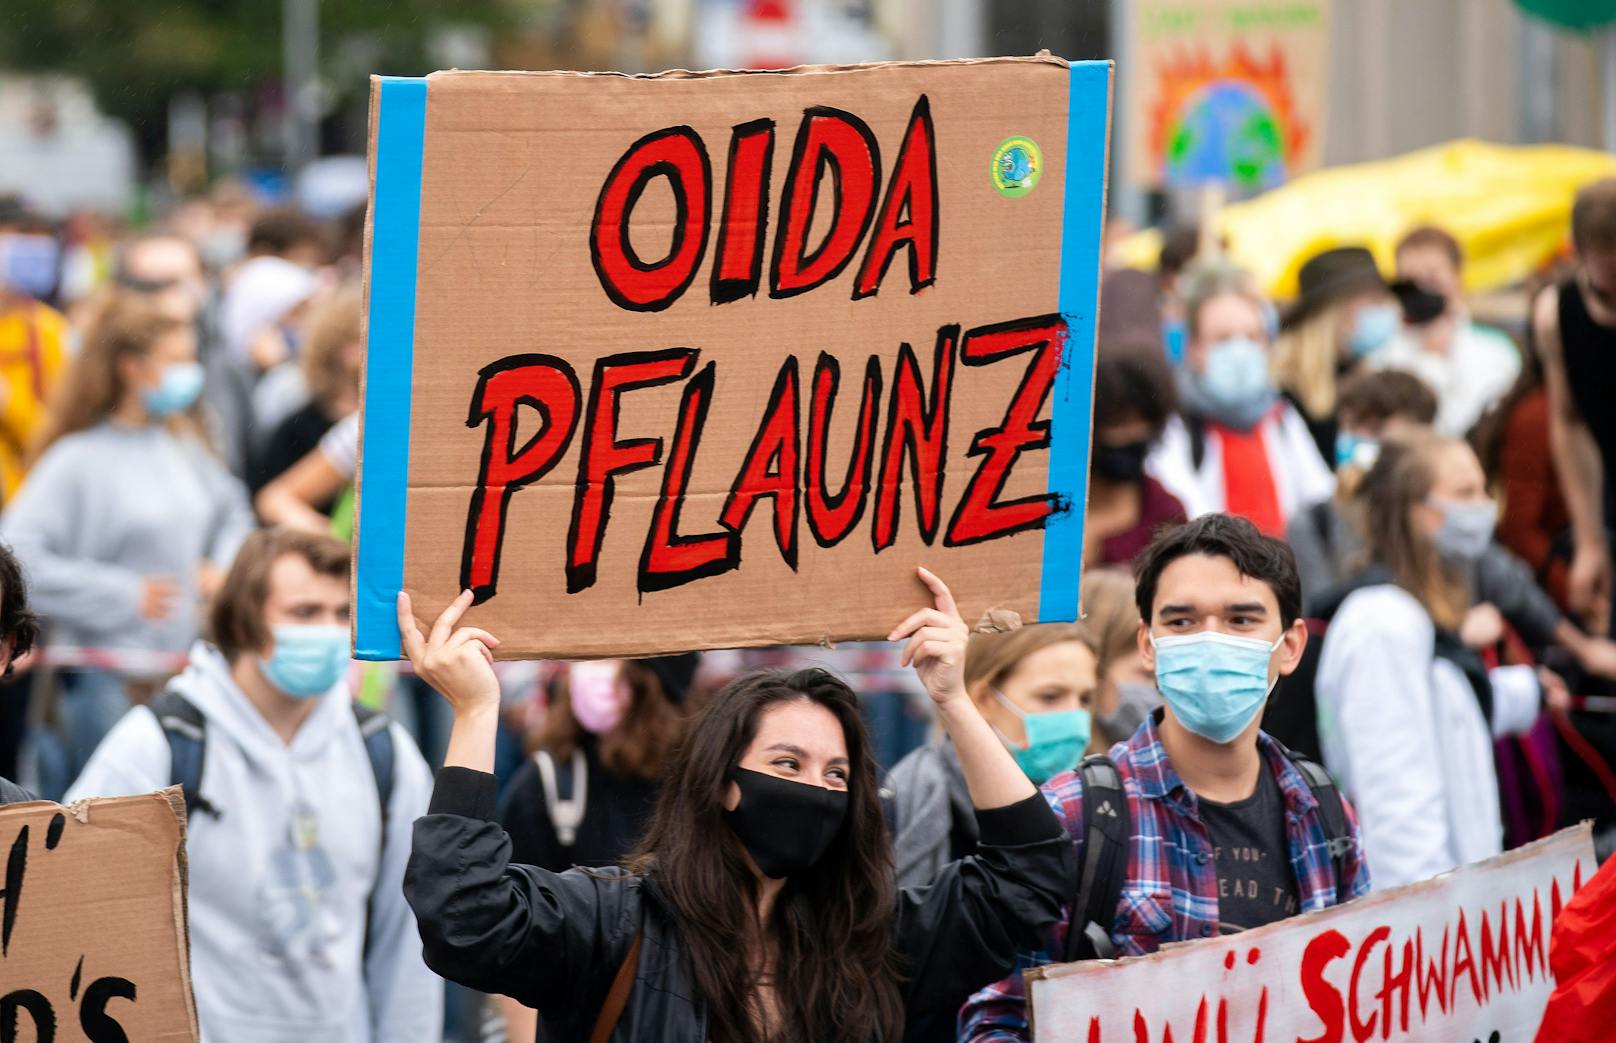 Demonstration in Wien am 25. September 2020, anl. eines weltweiten Klimastreiks der Klimaschutzbewegung "Fridays For Future"